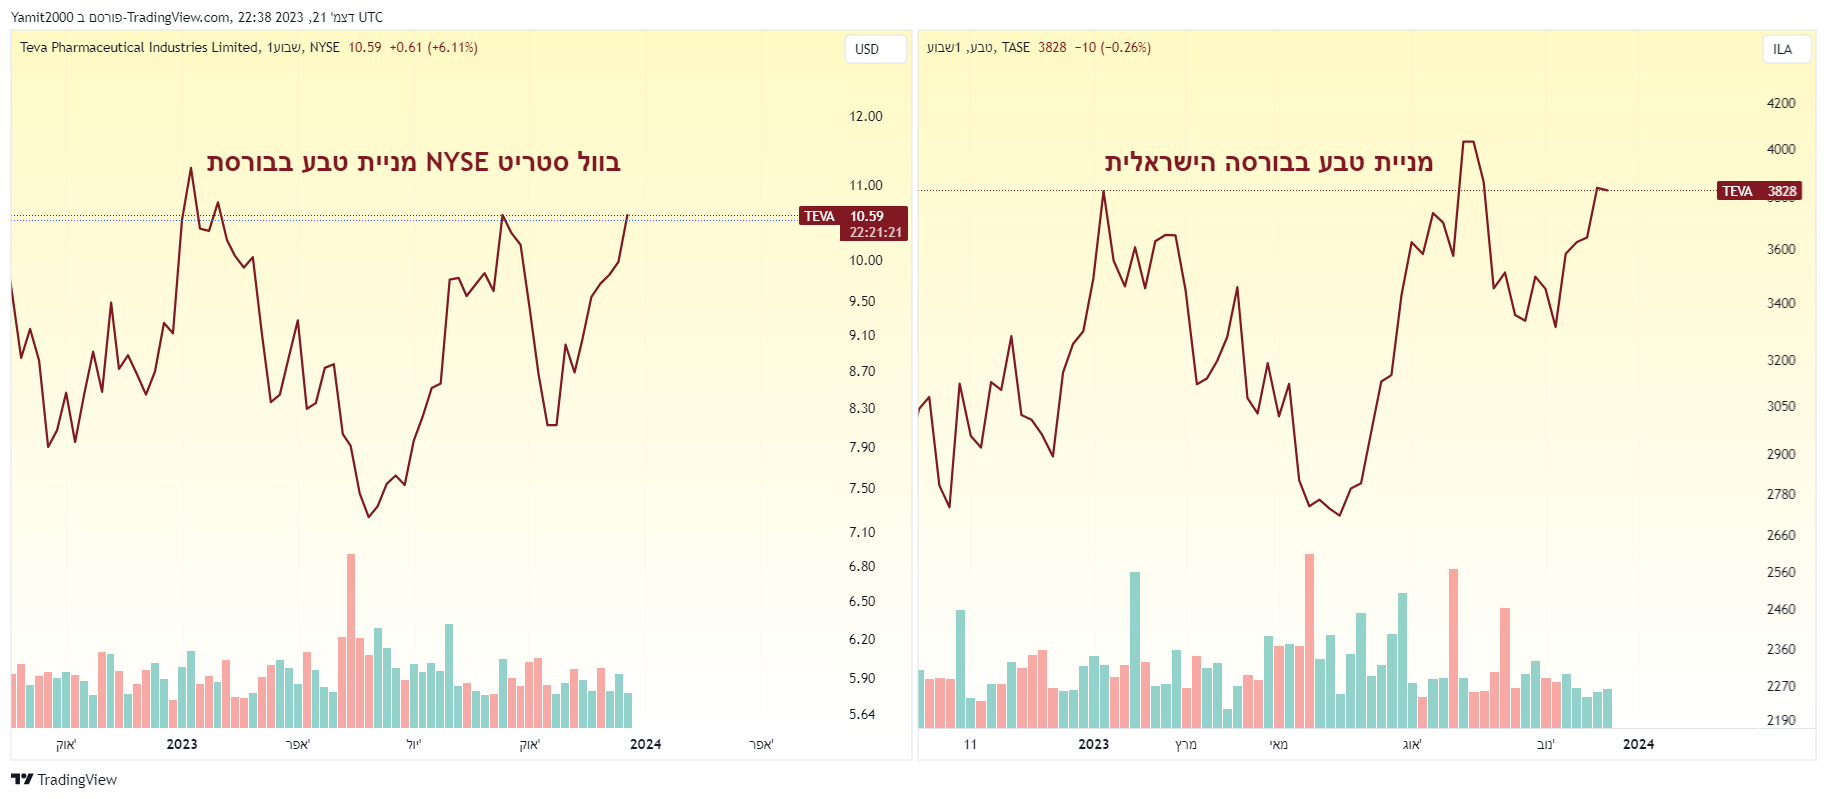 מניית טבע- TEVA נסחרת בבורסה הישראלית ובוול סטריט